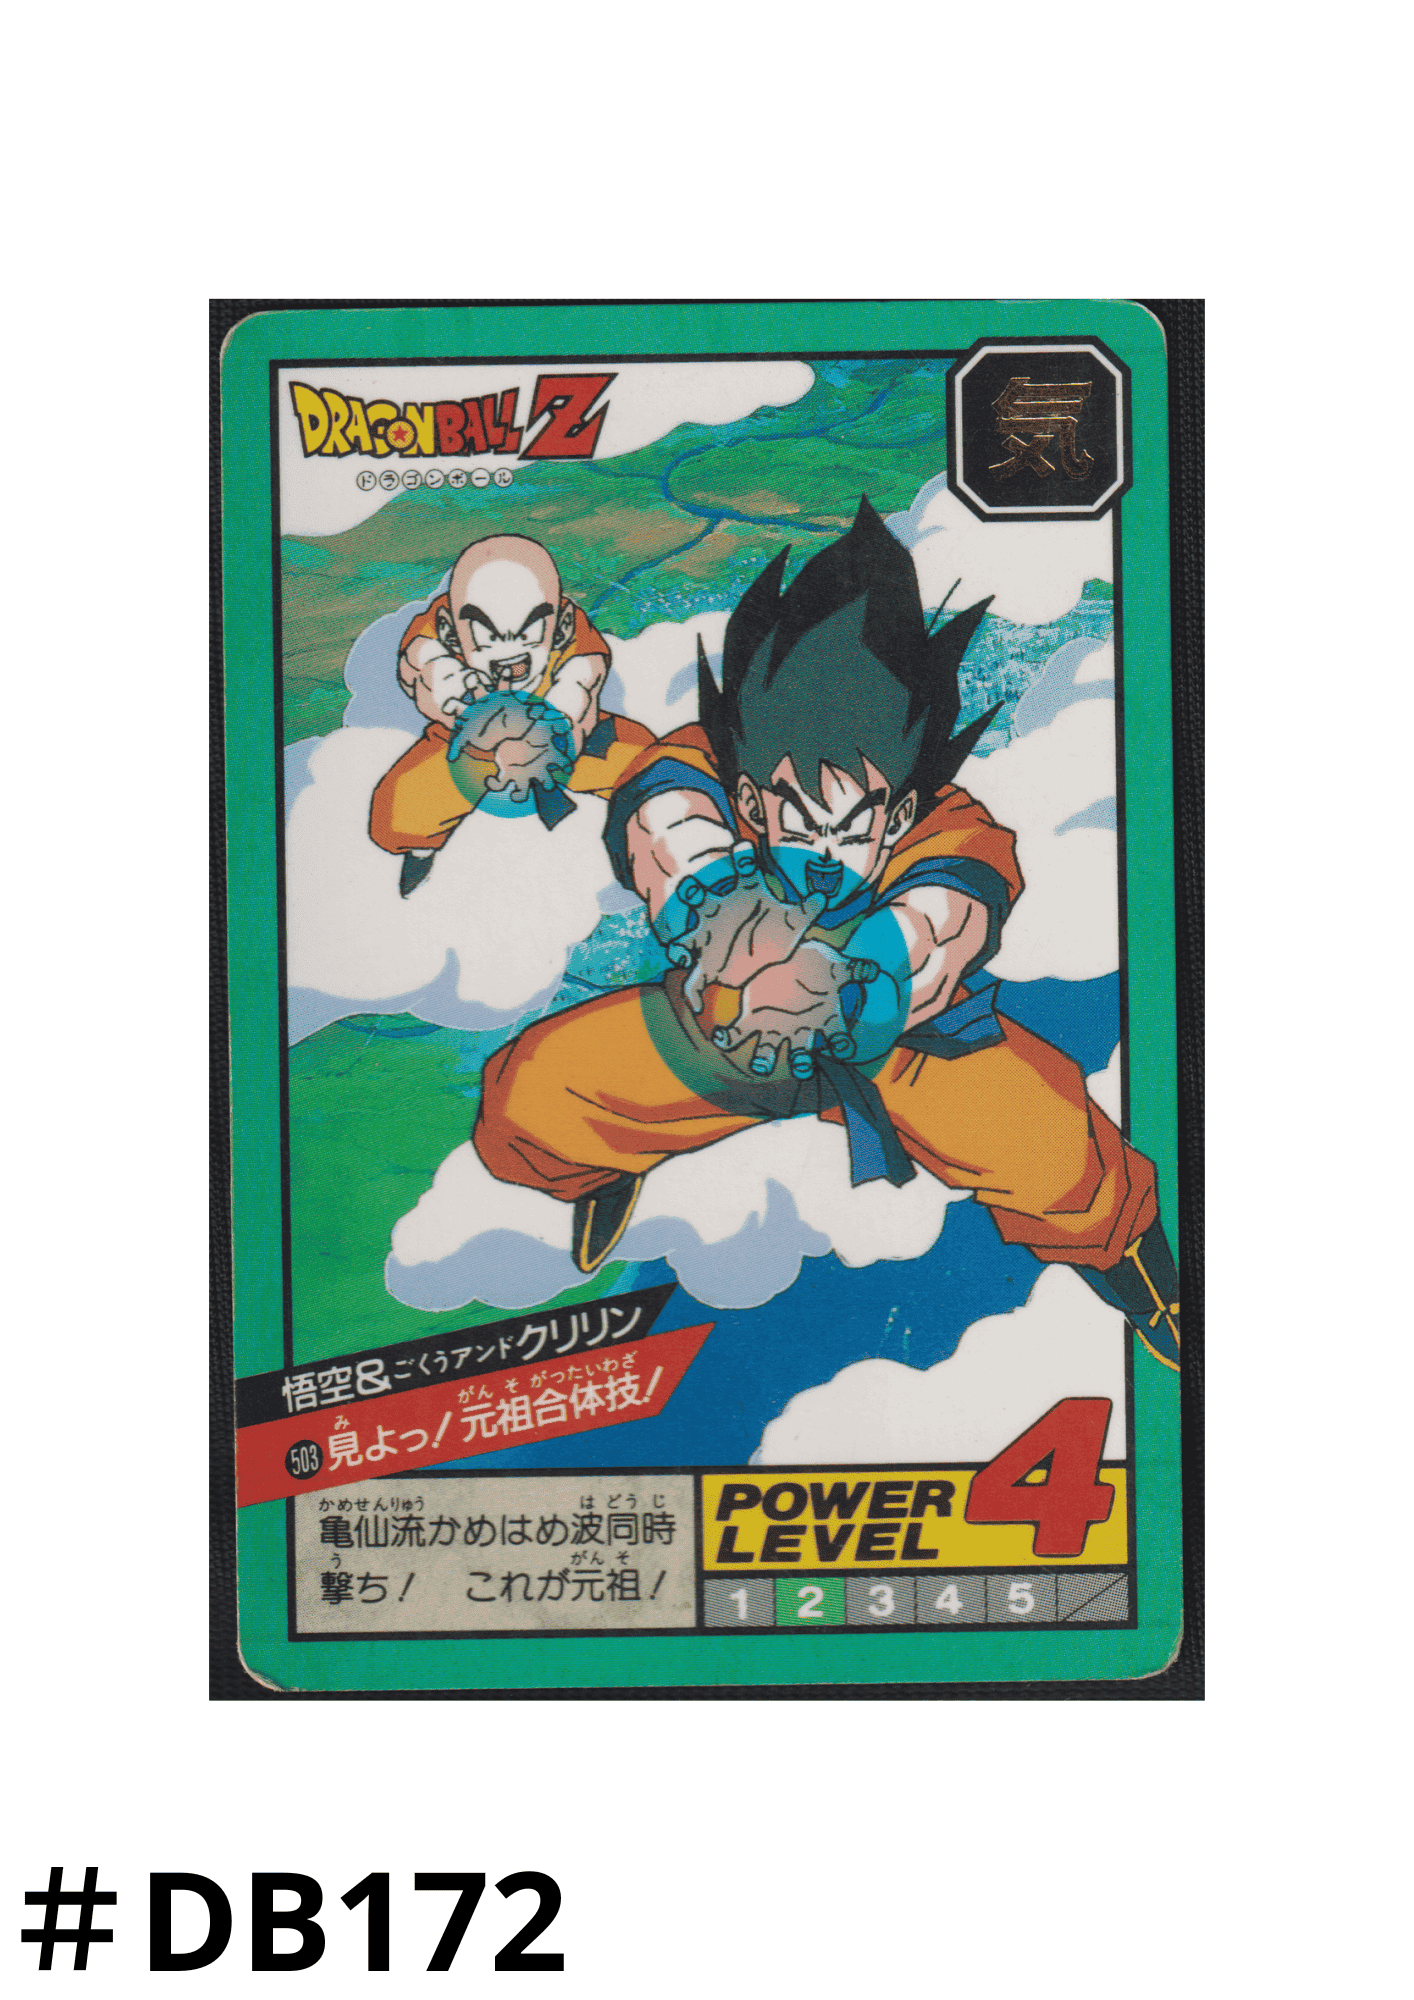 Goku & Krillin No.503 | Carddass Super Battle part 12 ChitoroShop